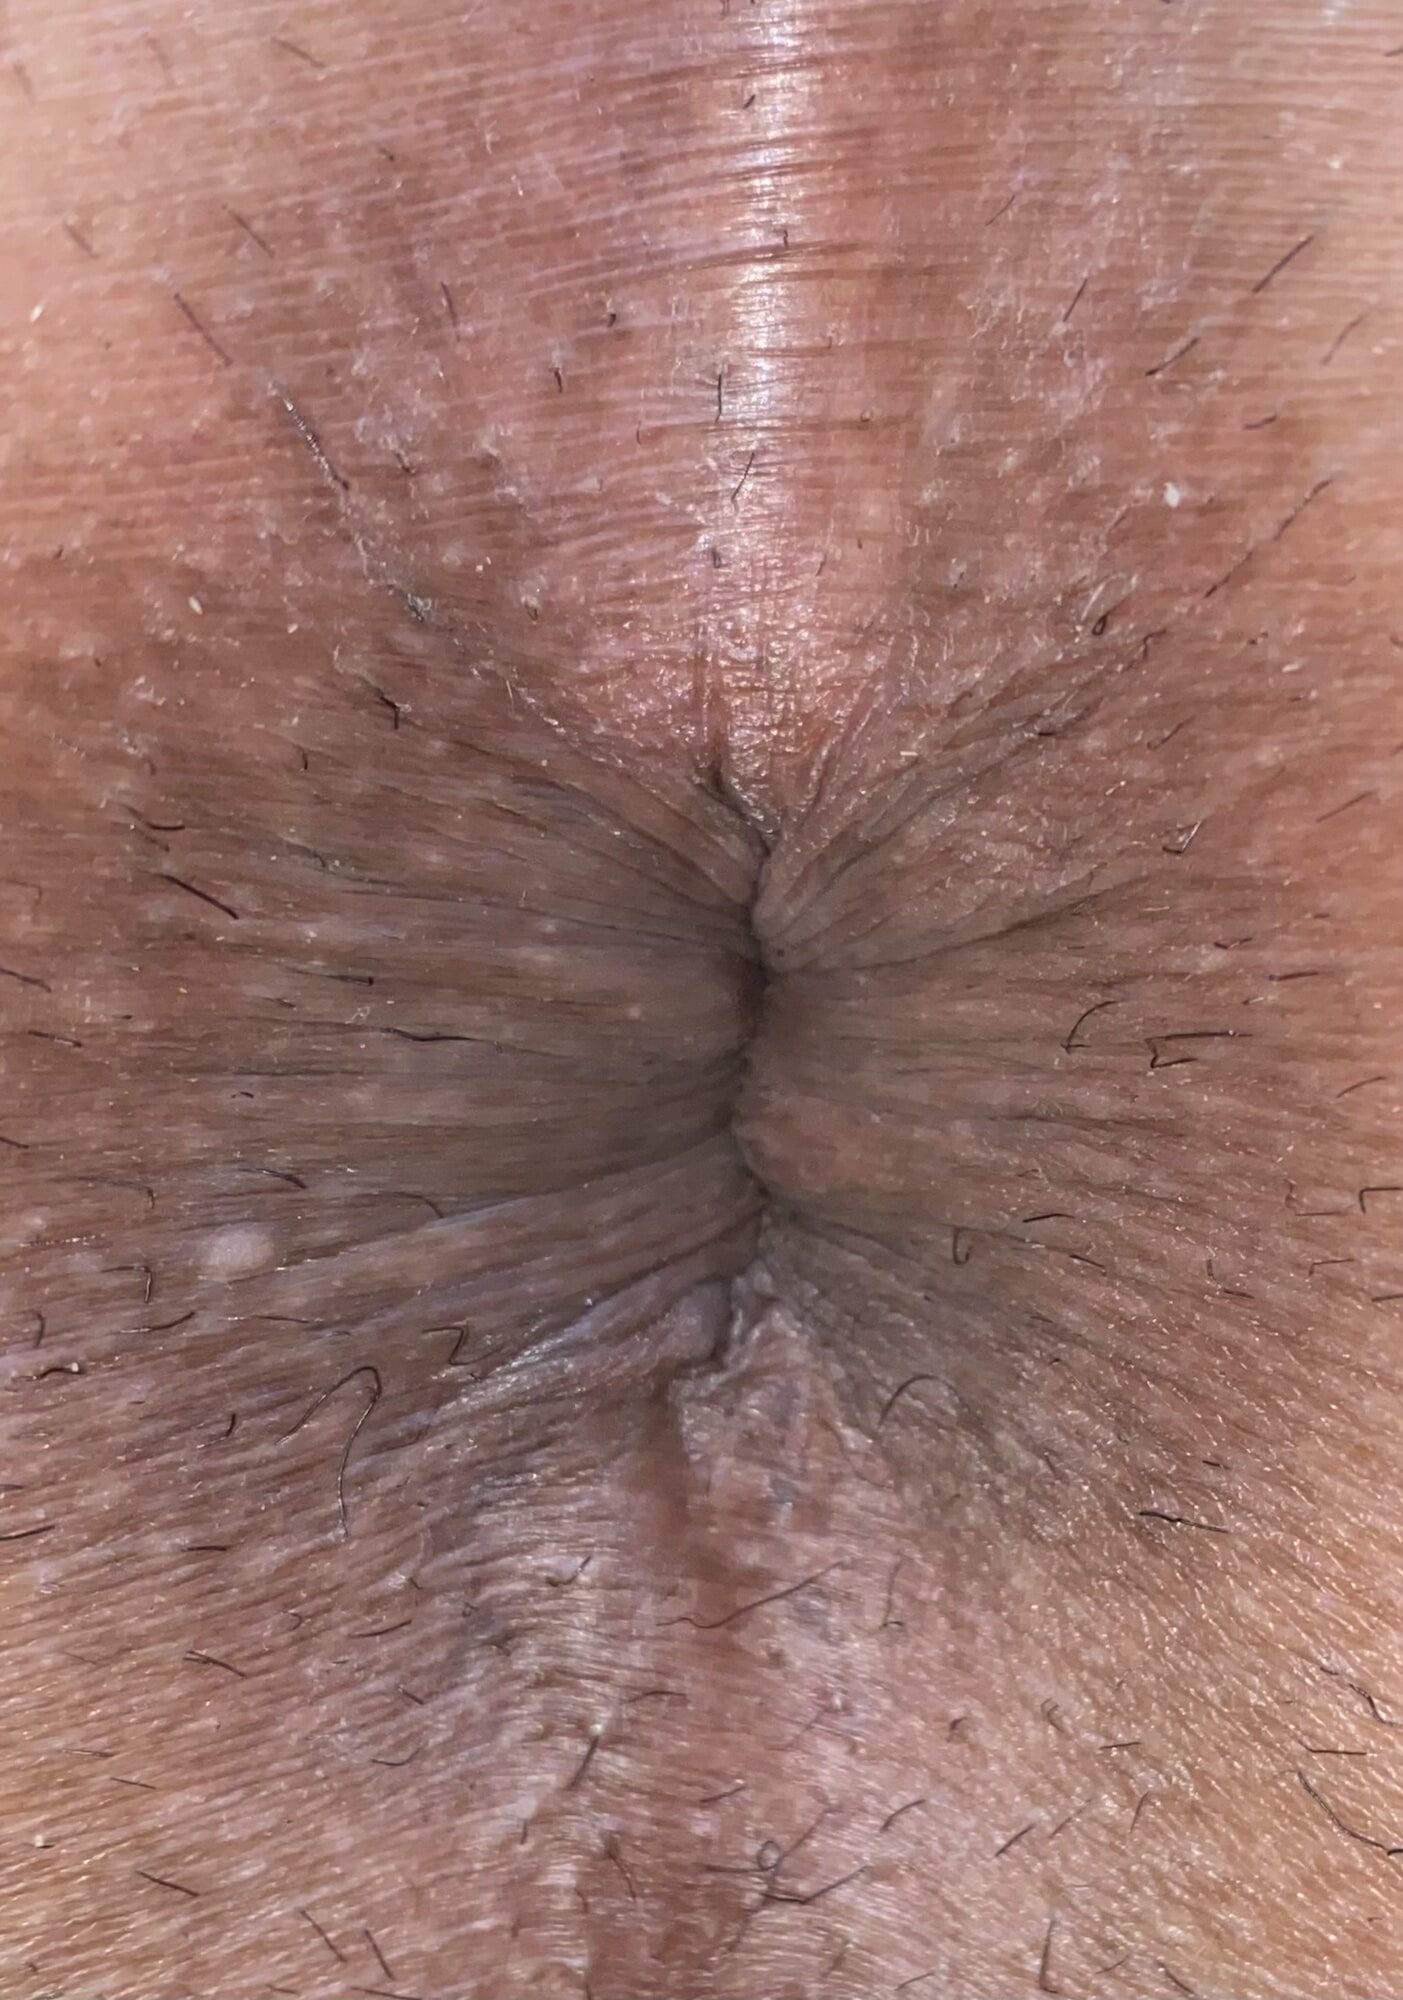 Close-up of a man's anus #12